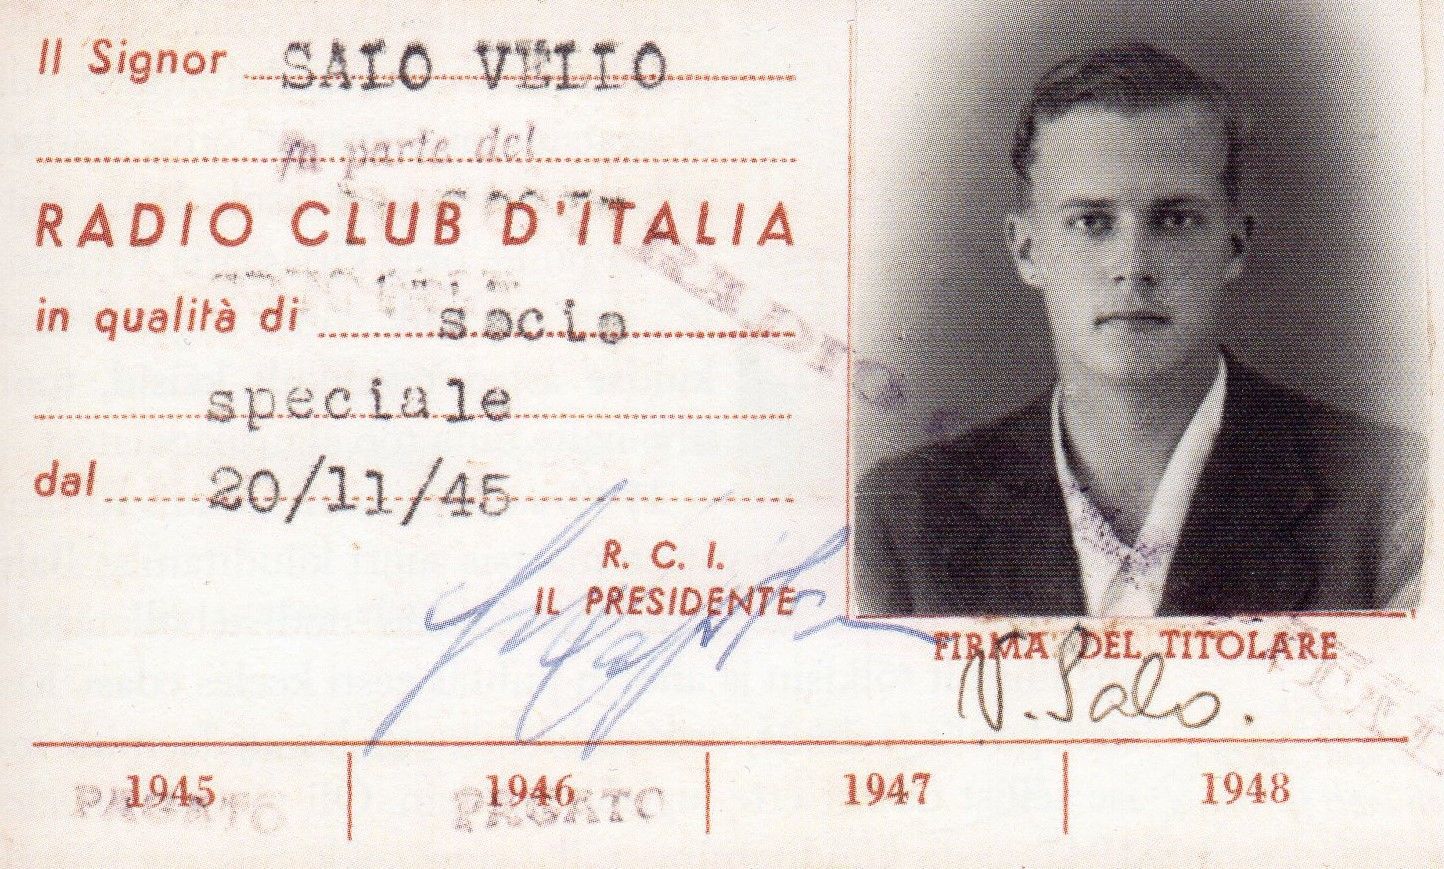 Членский билет Итальянской ассоциации радиолюбителей Велло Сало от 1945 года. Фото из книги "Siin Vatikani Raadio!" Велло Сало Лугу